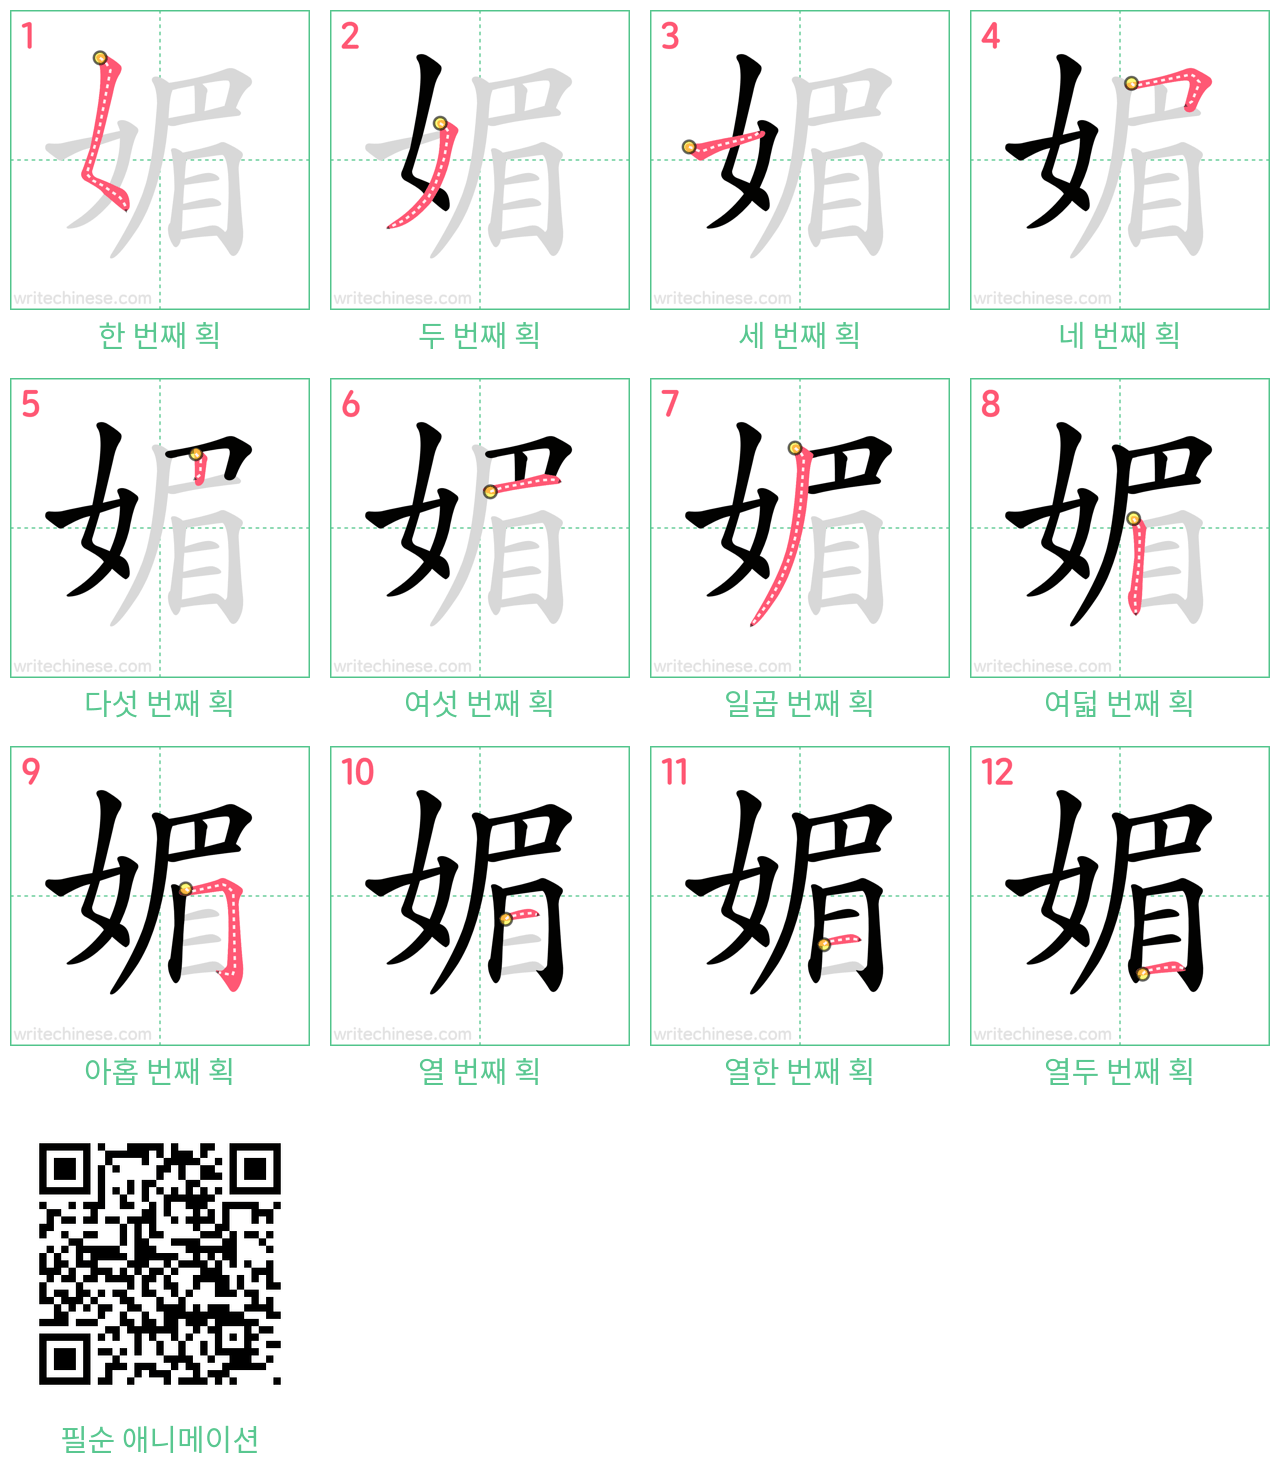 媚 step-by-step stroke order diagrams